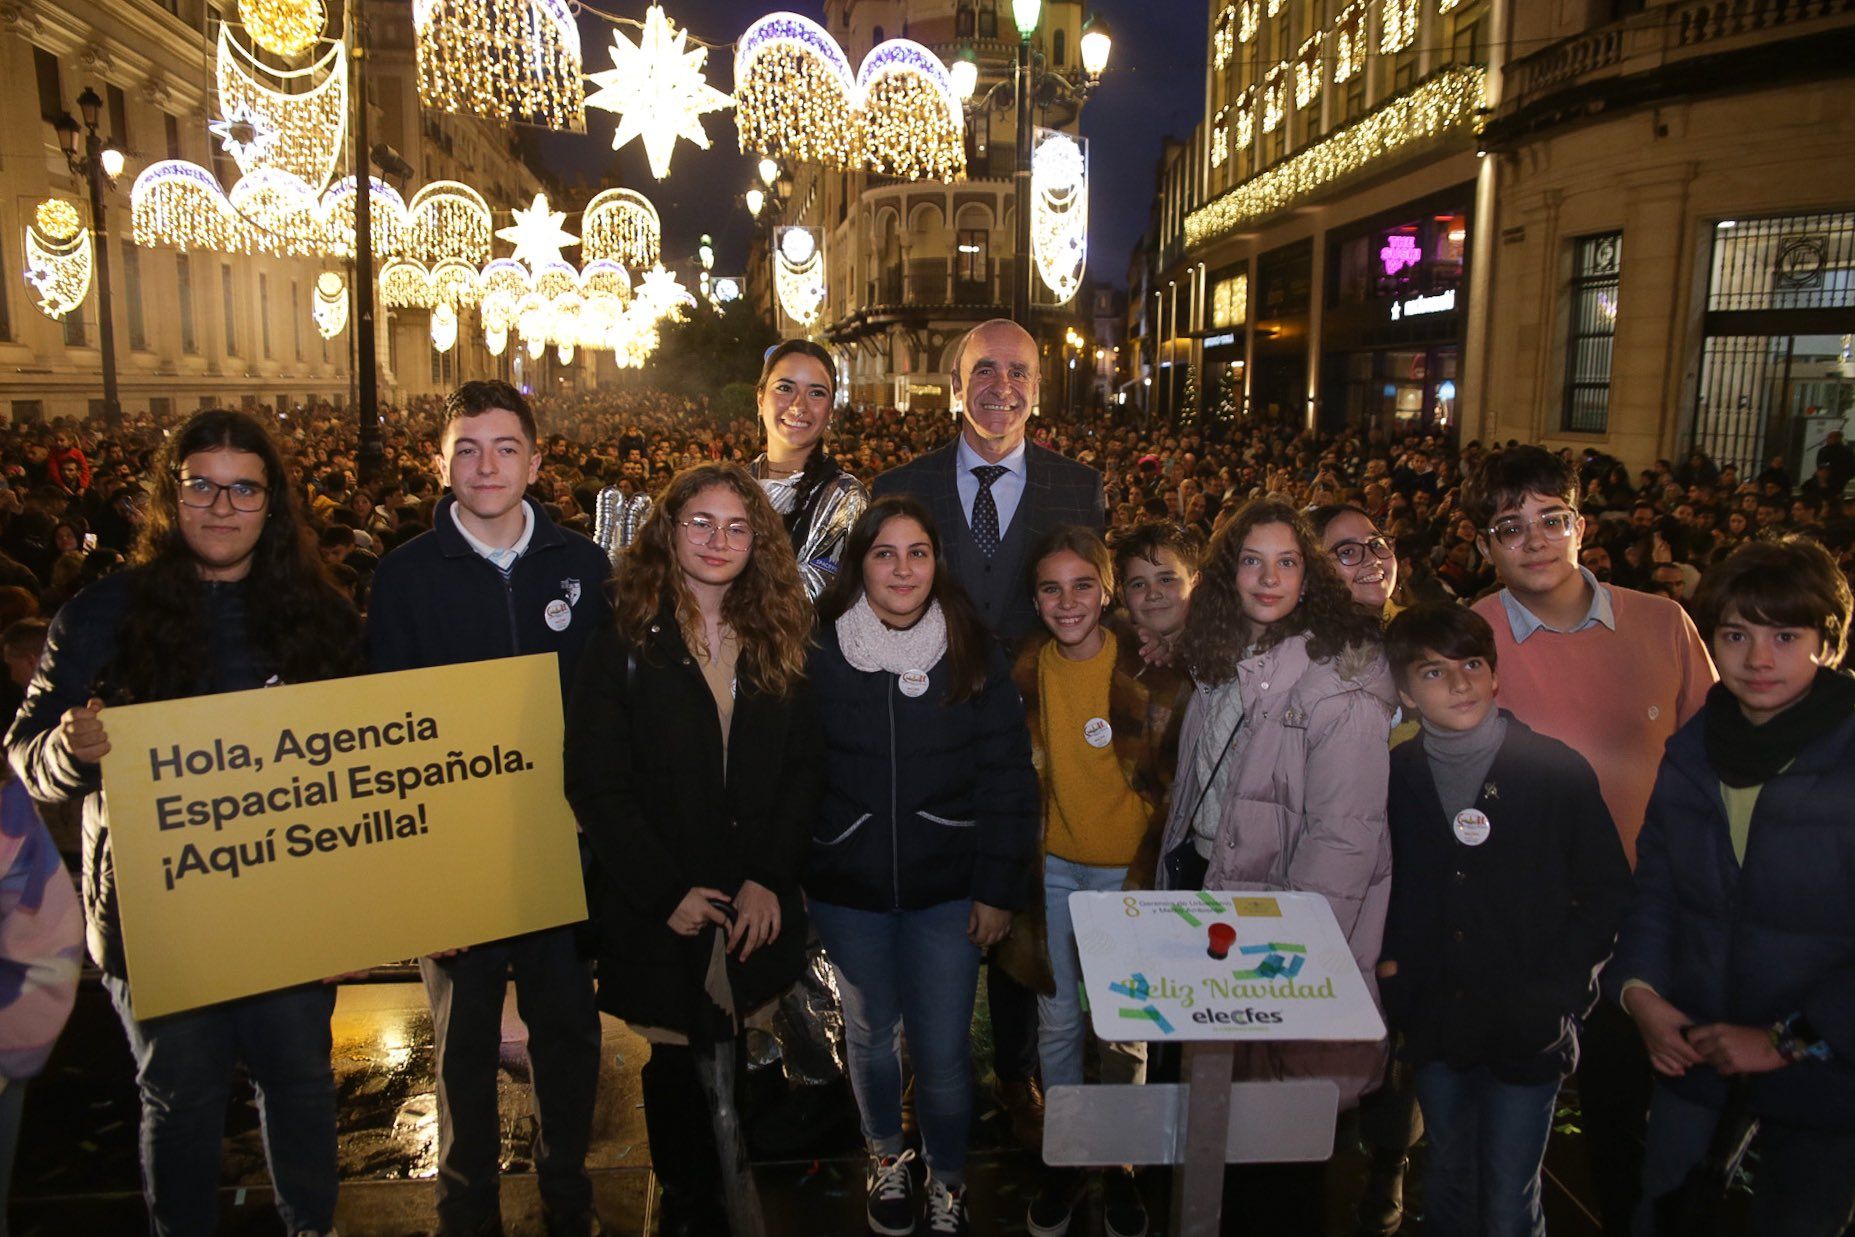 Momento de la inauguración del alumbrado navideño en Sevilla, con el alcalde en el centro de la imagen.